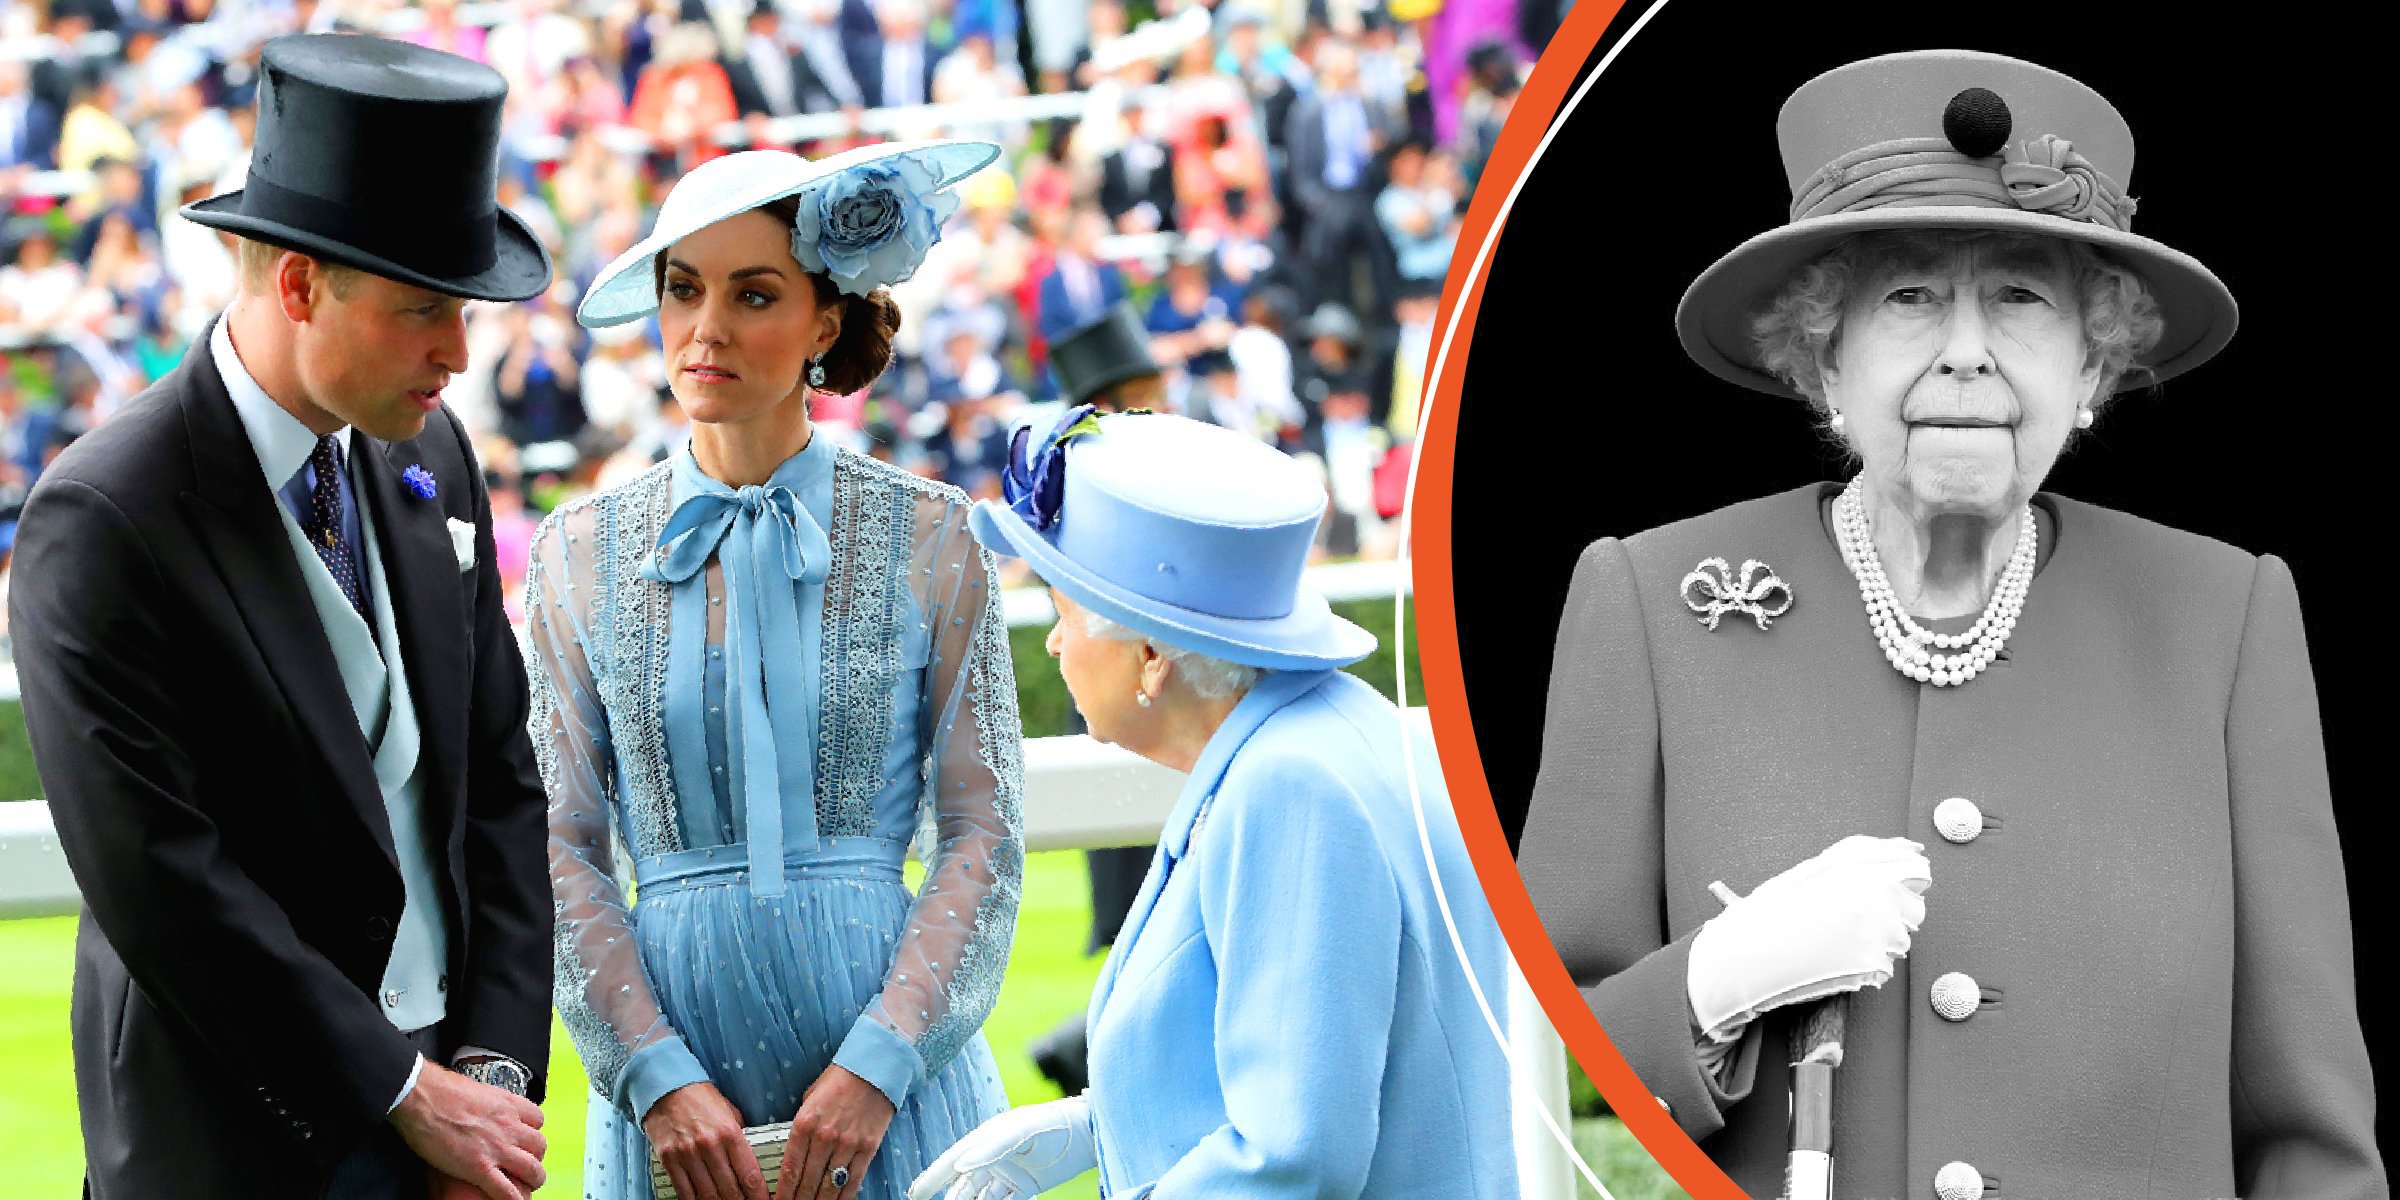  Prince William, Duchess Kate, and Queen Elizabeth II | Queen Elizabeth II | Source: Getty Images